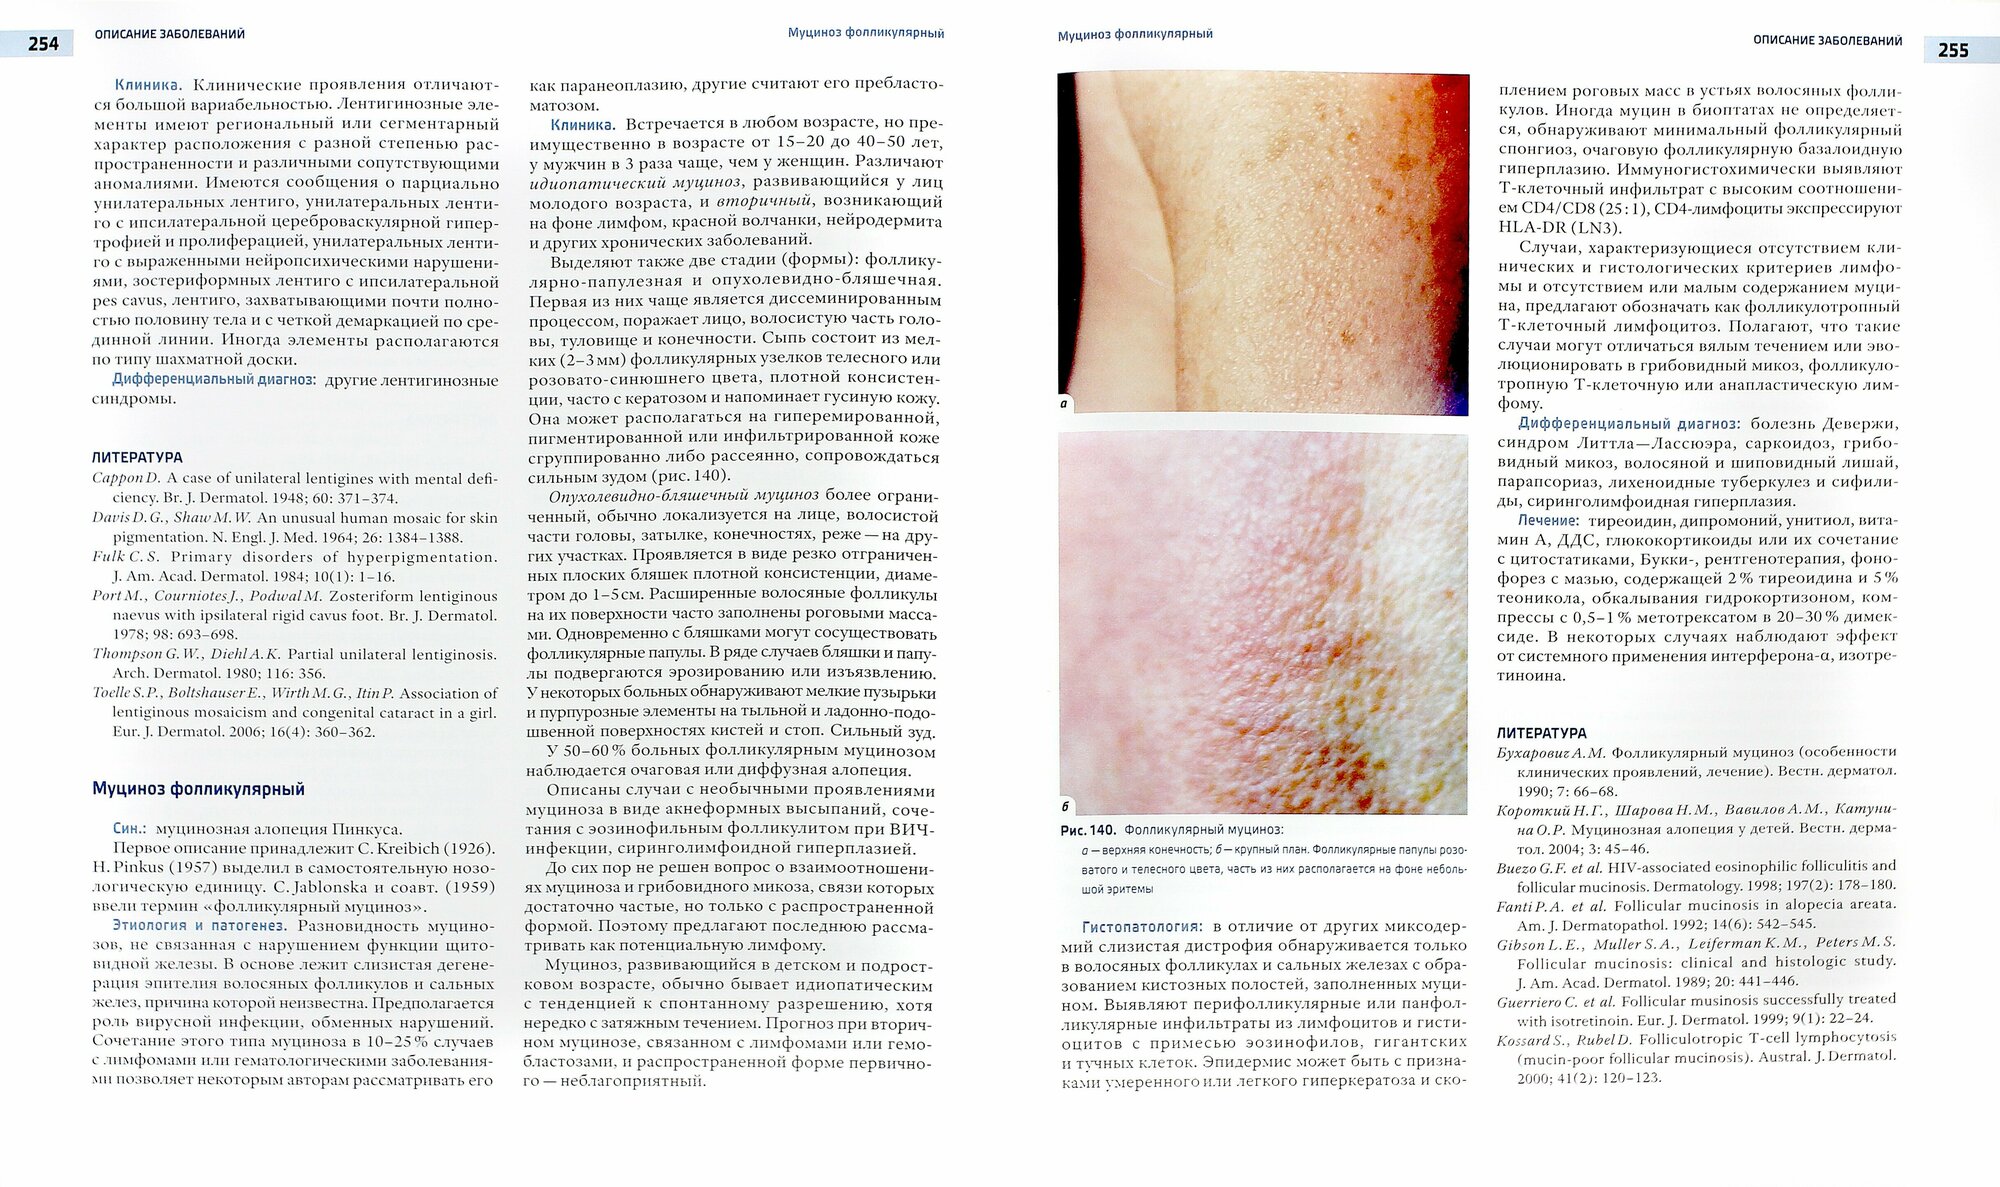 Практическая дерматоонкология. Иллюстрированное справочное руководство по опухолям кожи - фото №2